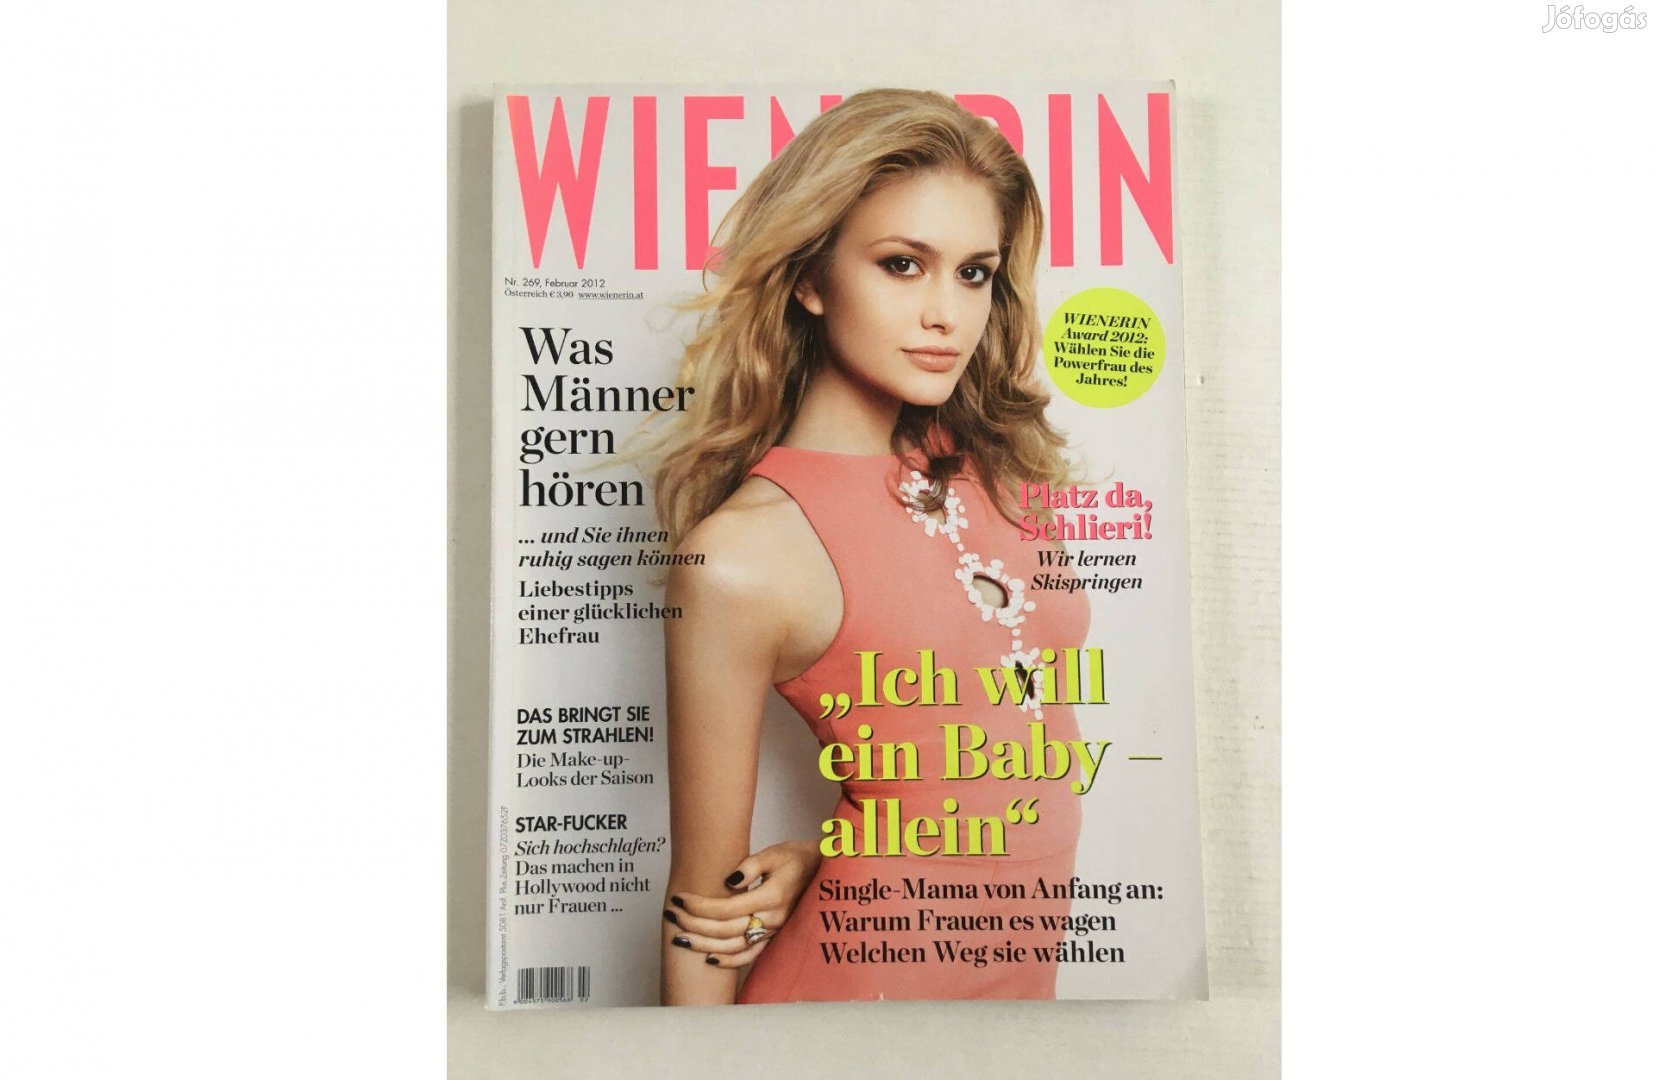 Wienerin német nyelvű magazin, újság - 2012. február